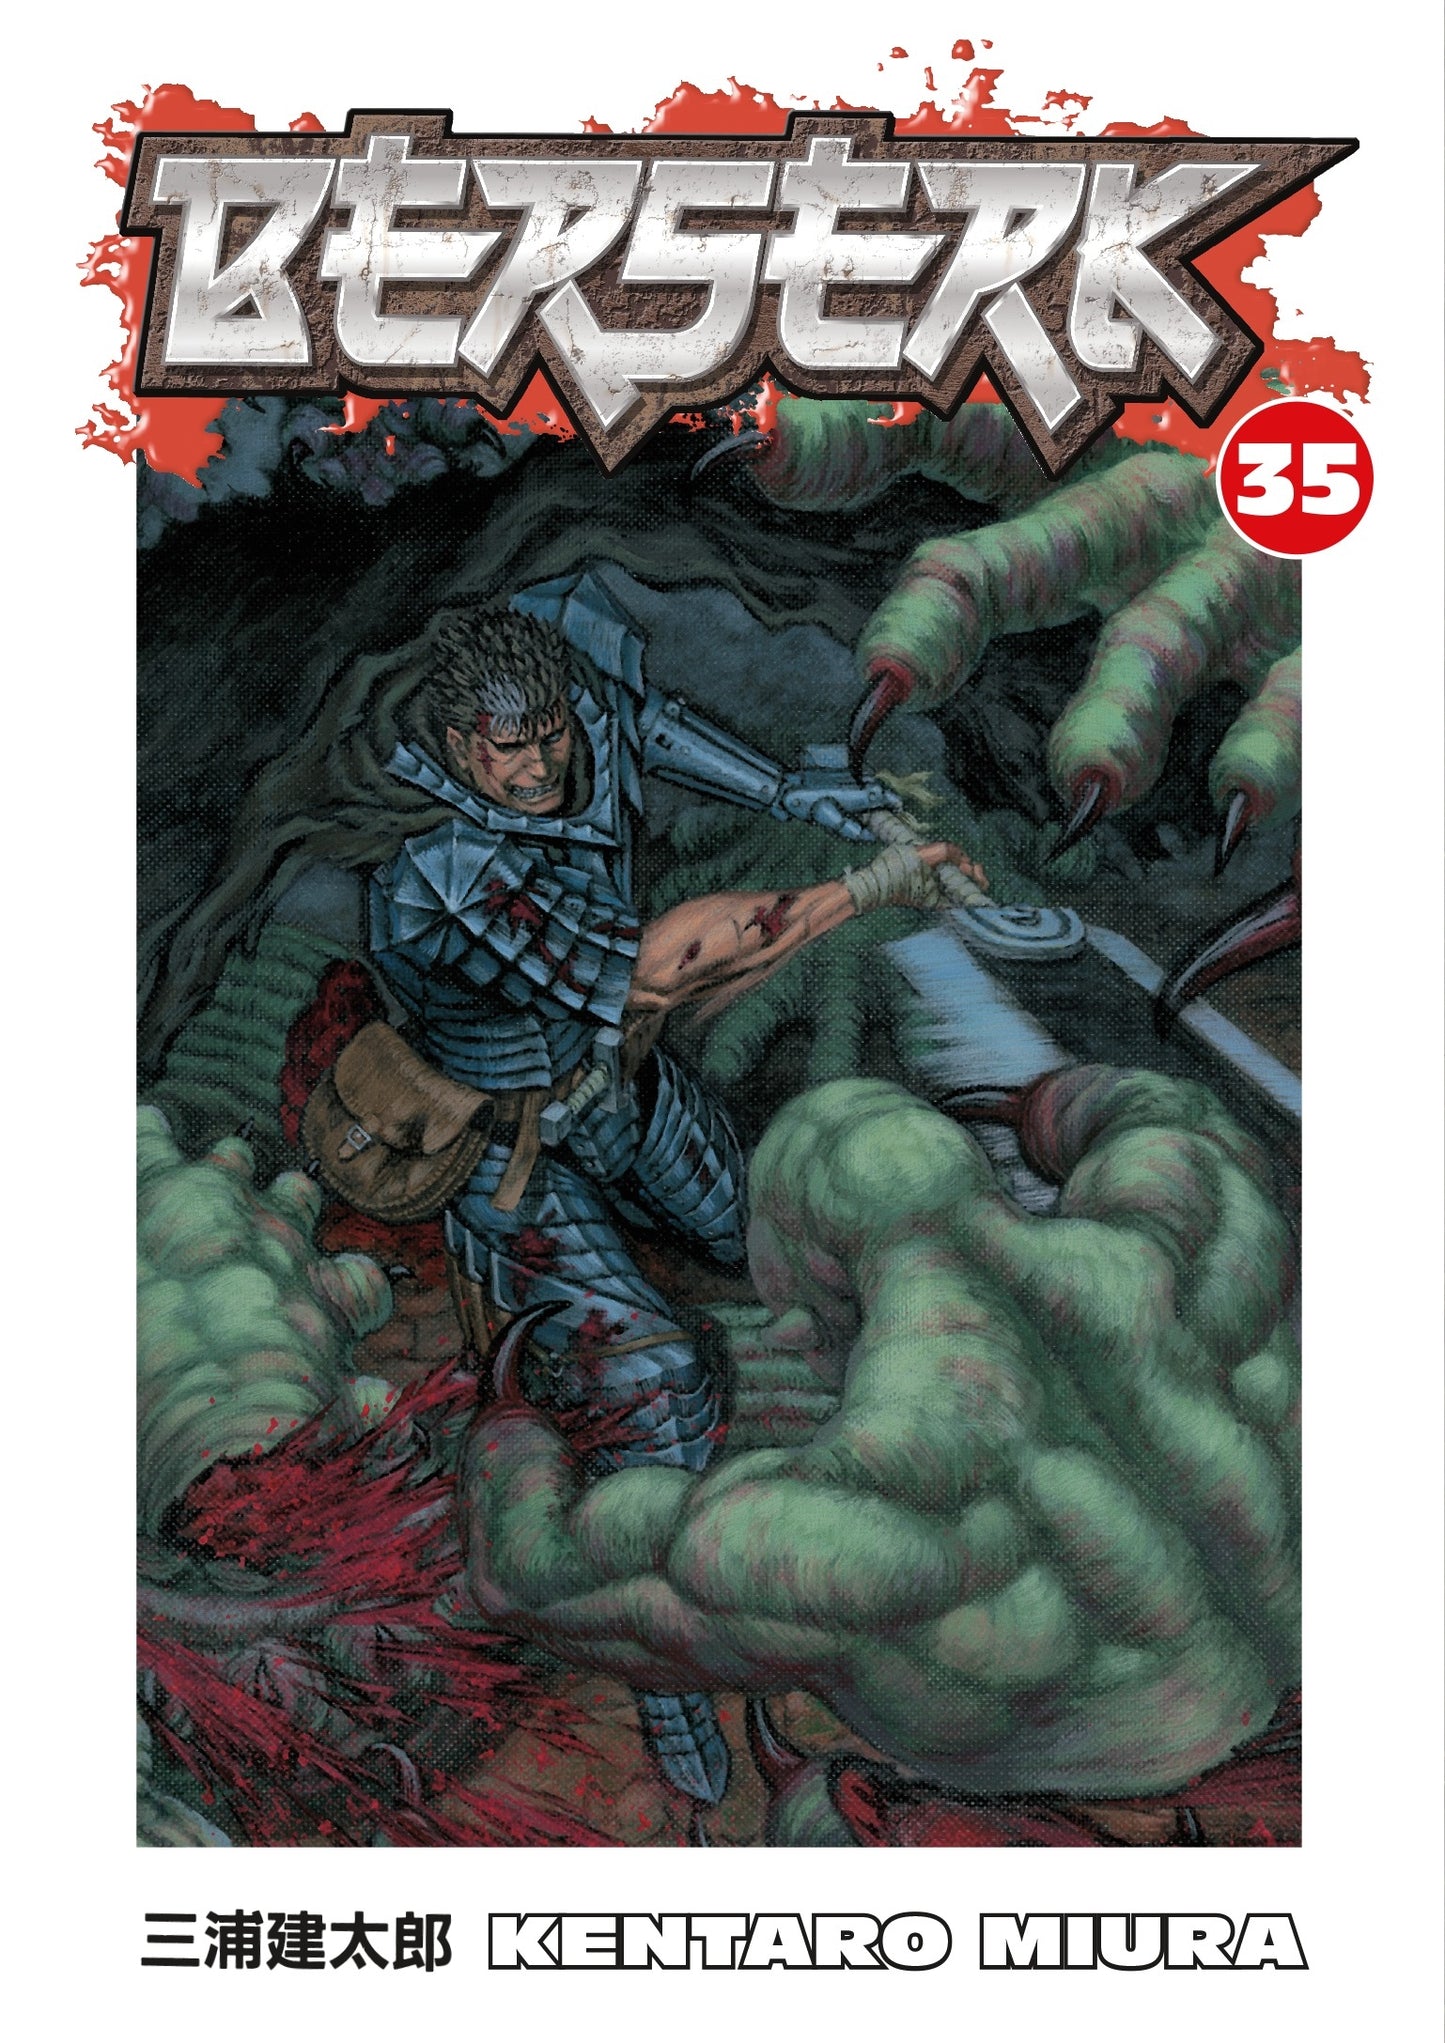 Berserk Volume 35 - Manga Warehouse